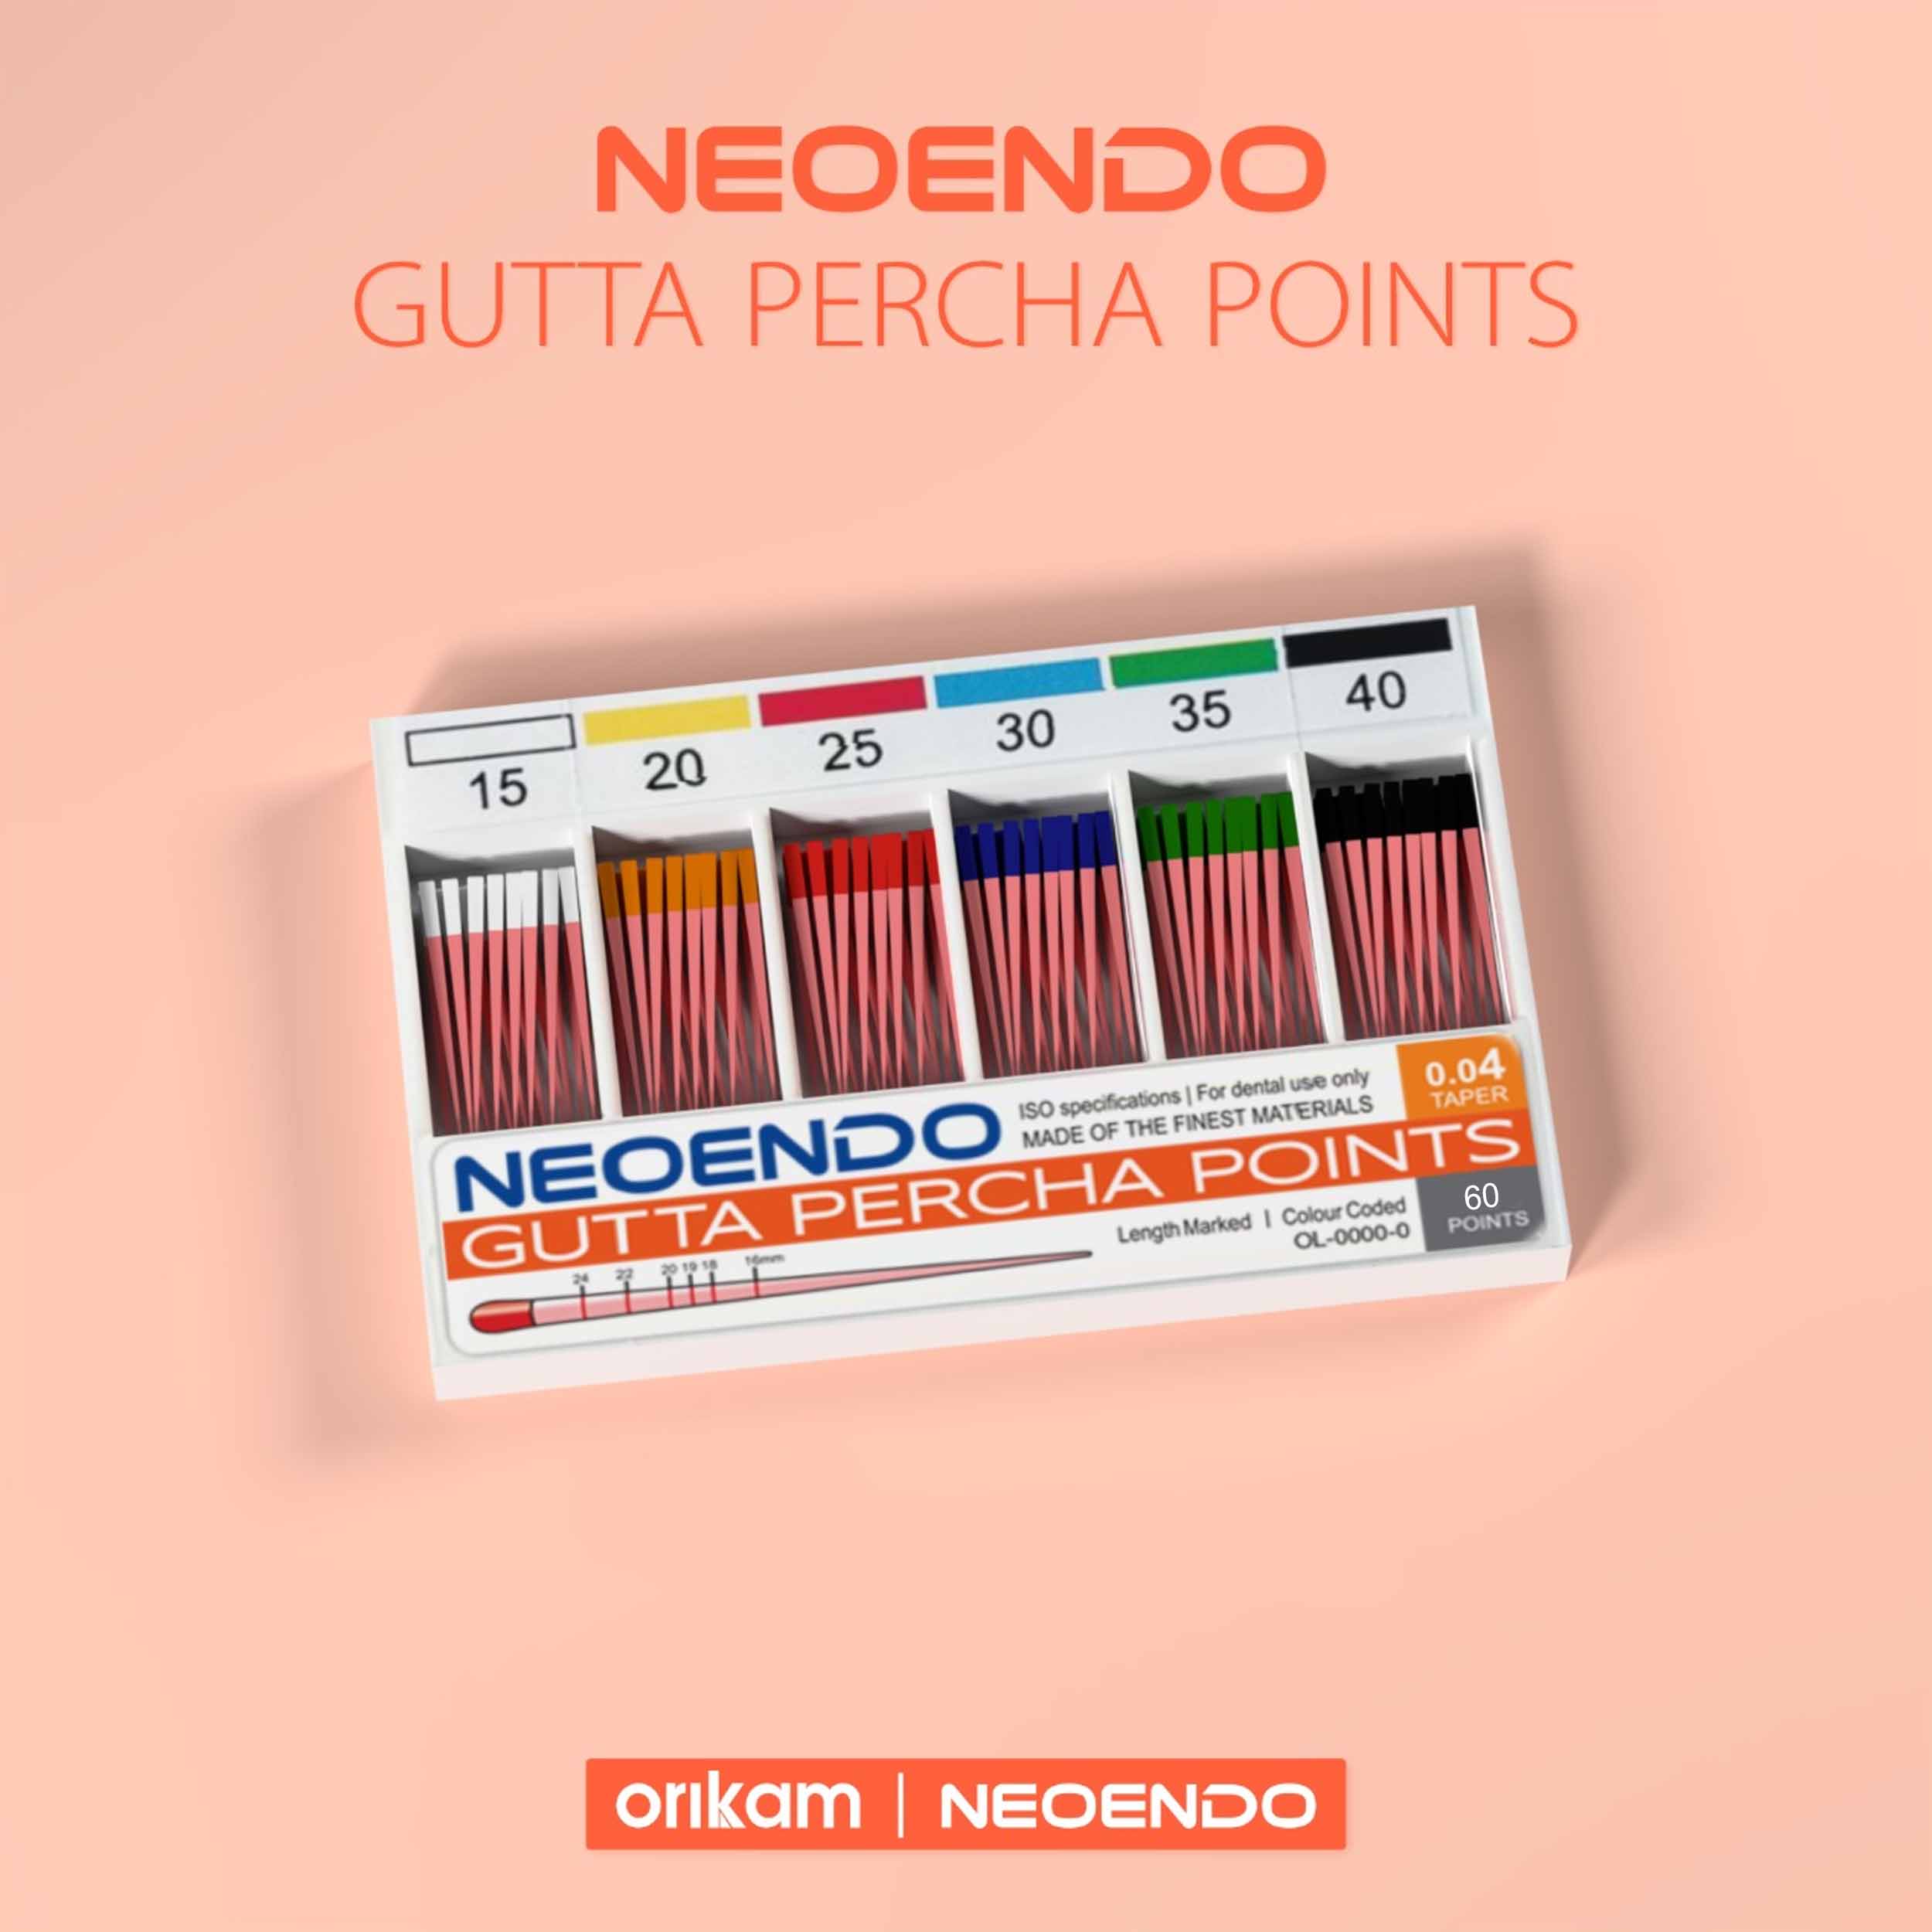 Neoendo Gutta Percha Points 20 6%